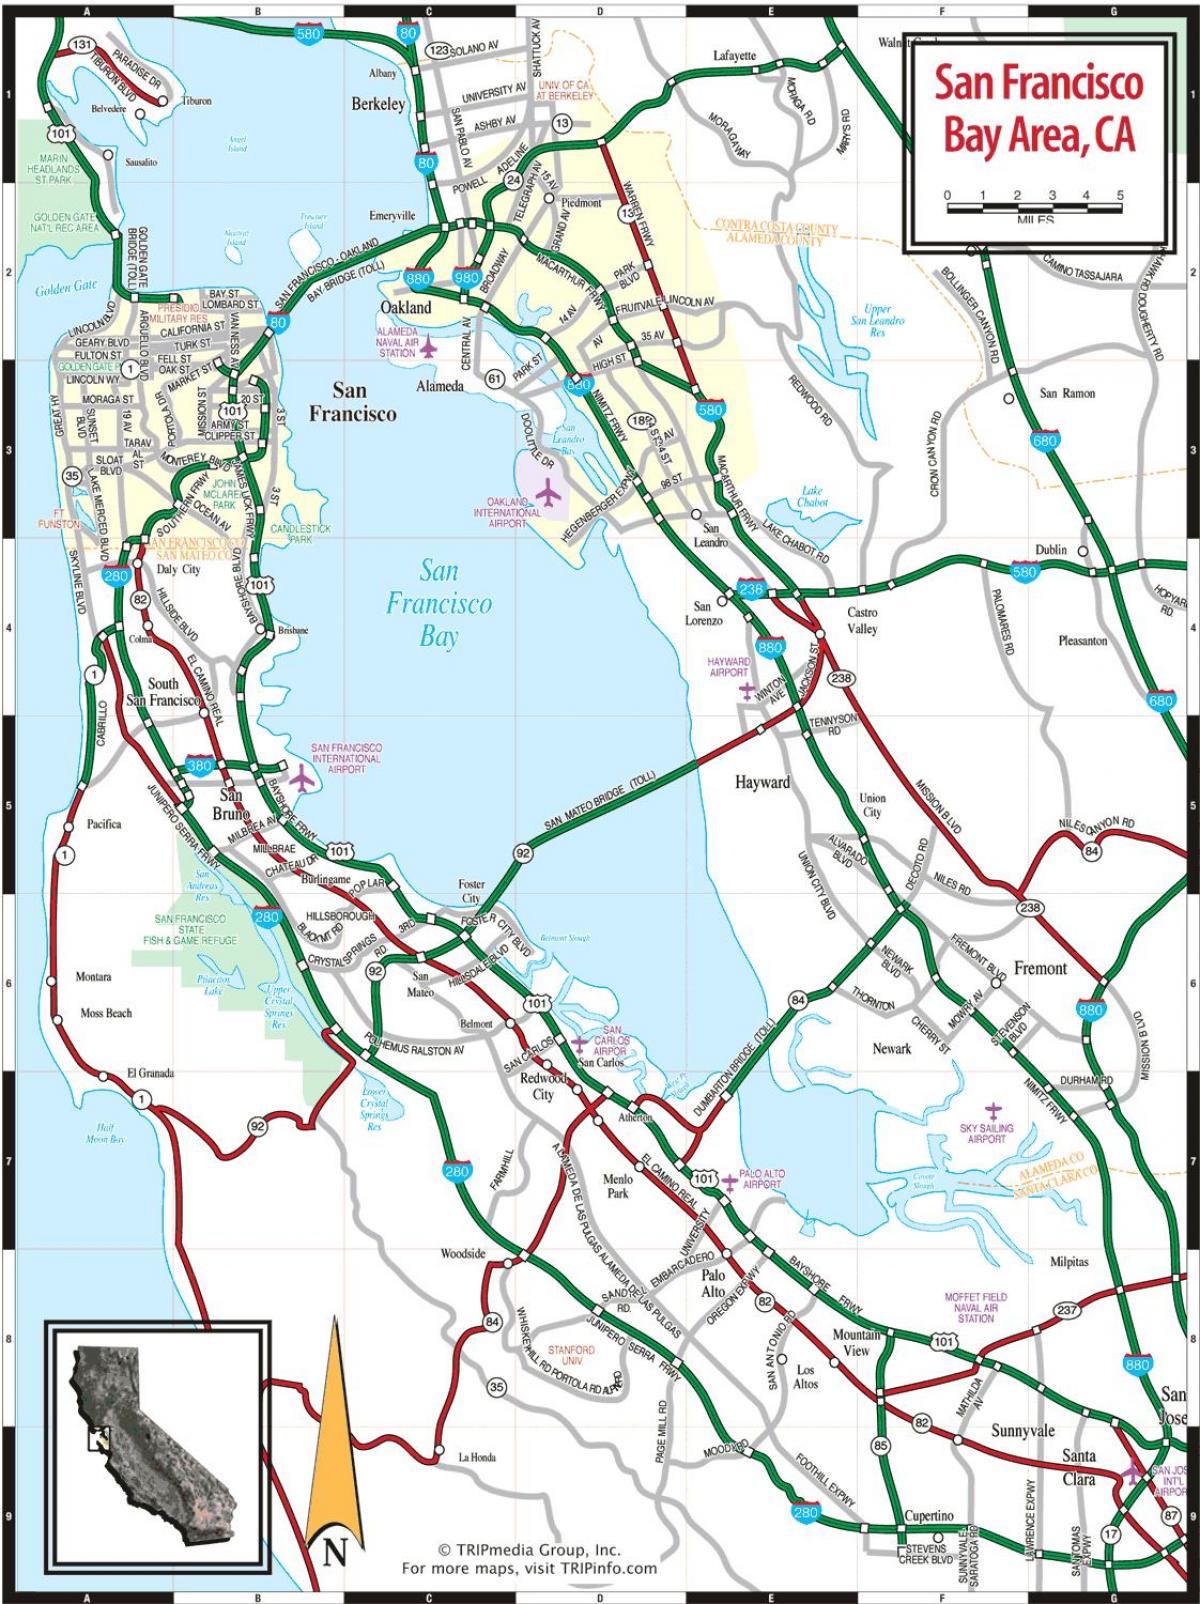 térkép San Francisco bay area